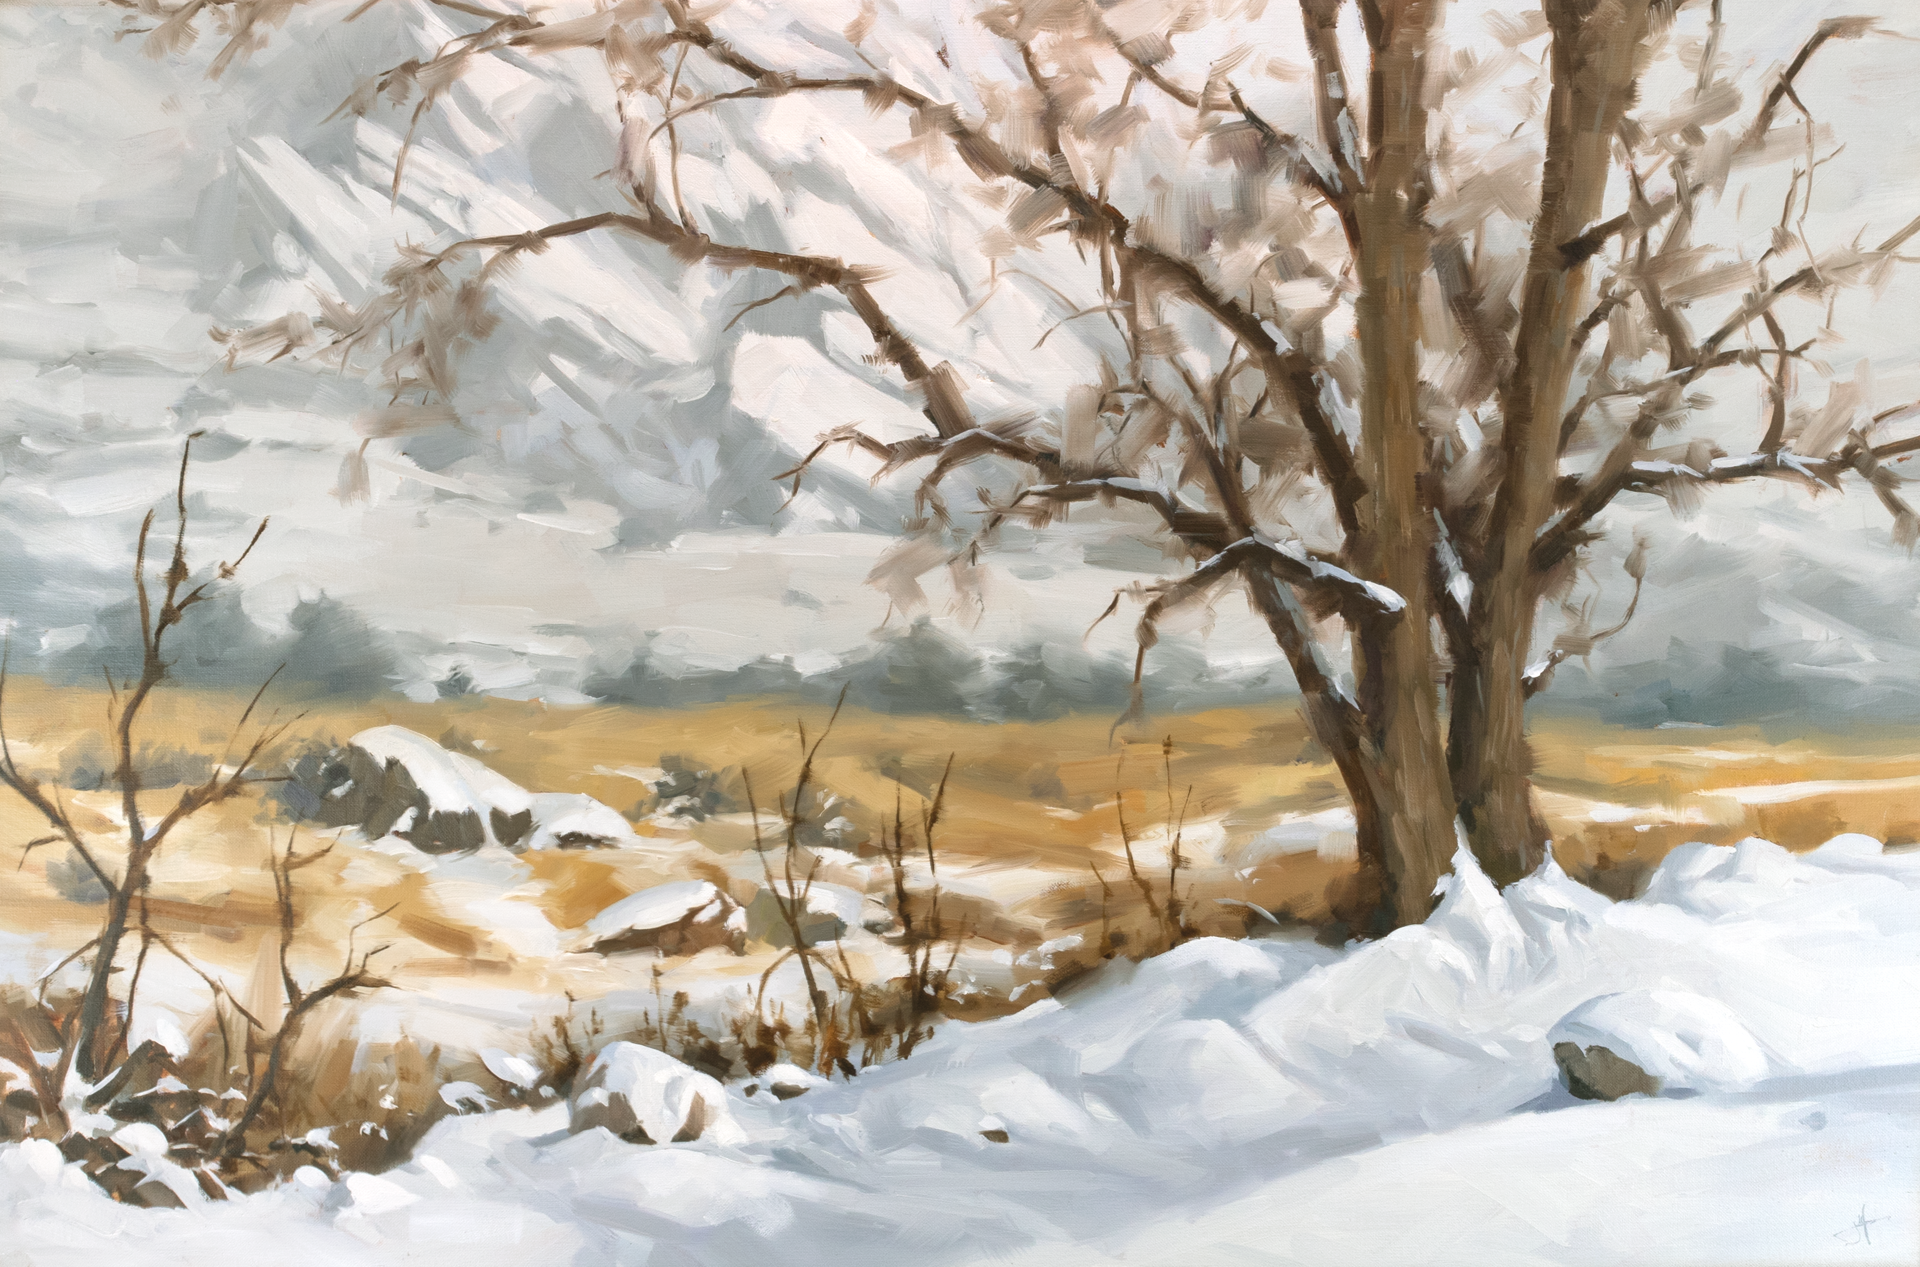 Winter Veil by Judd Mercer